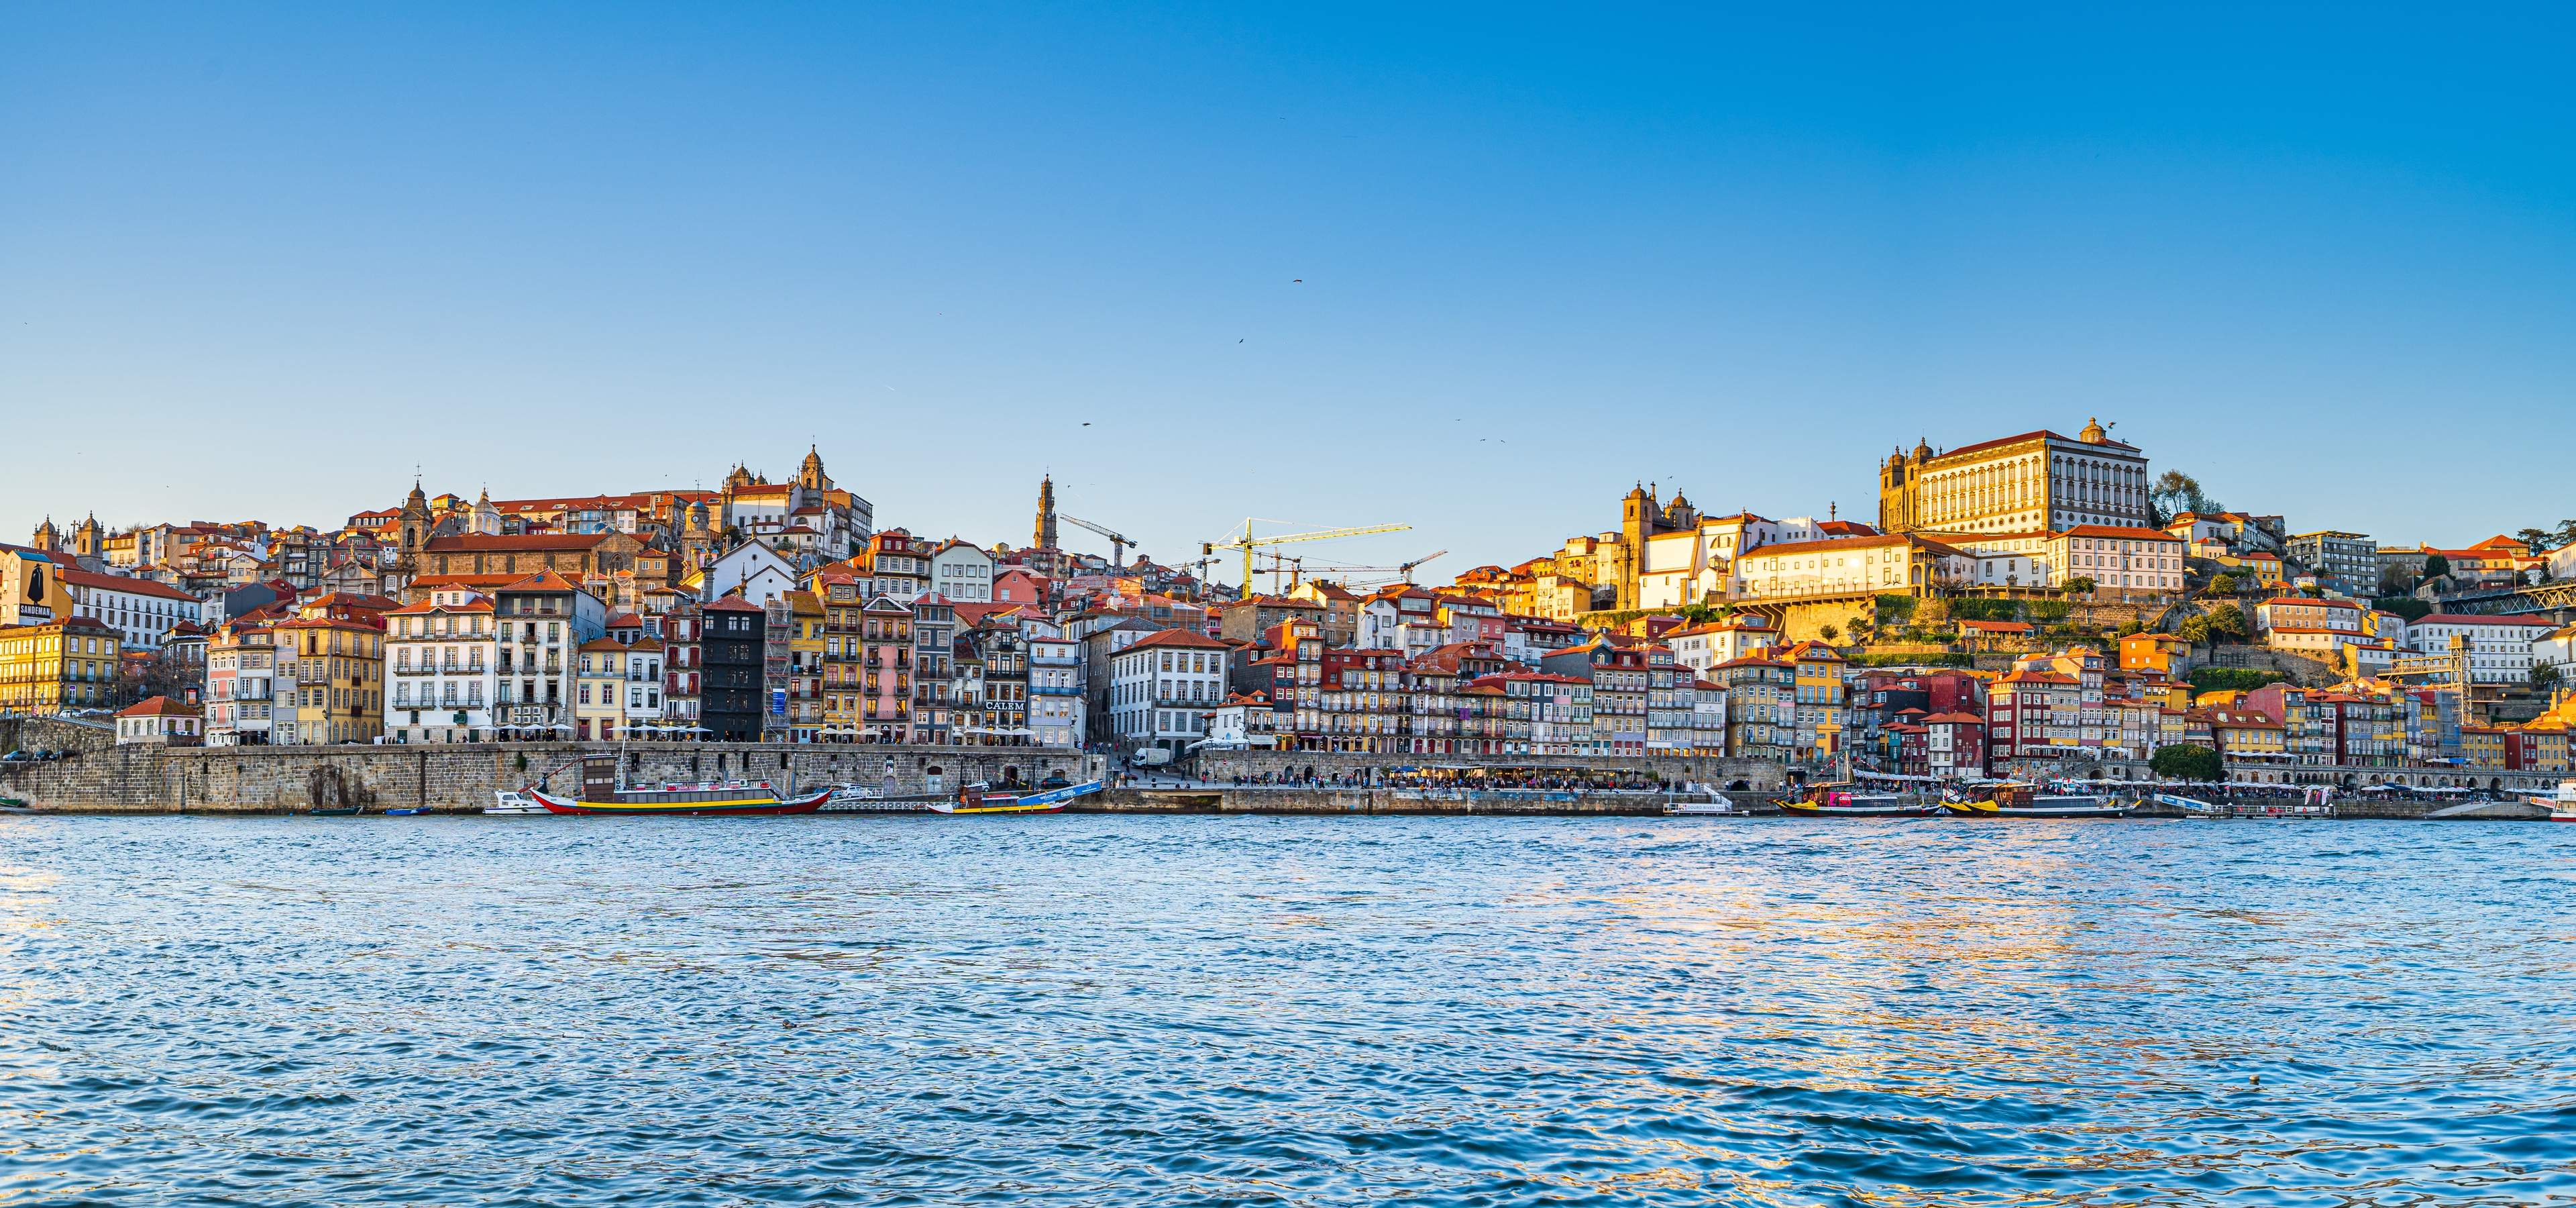 View of North bank of Douro River, Porto, Portugal